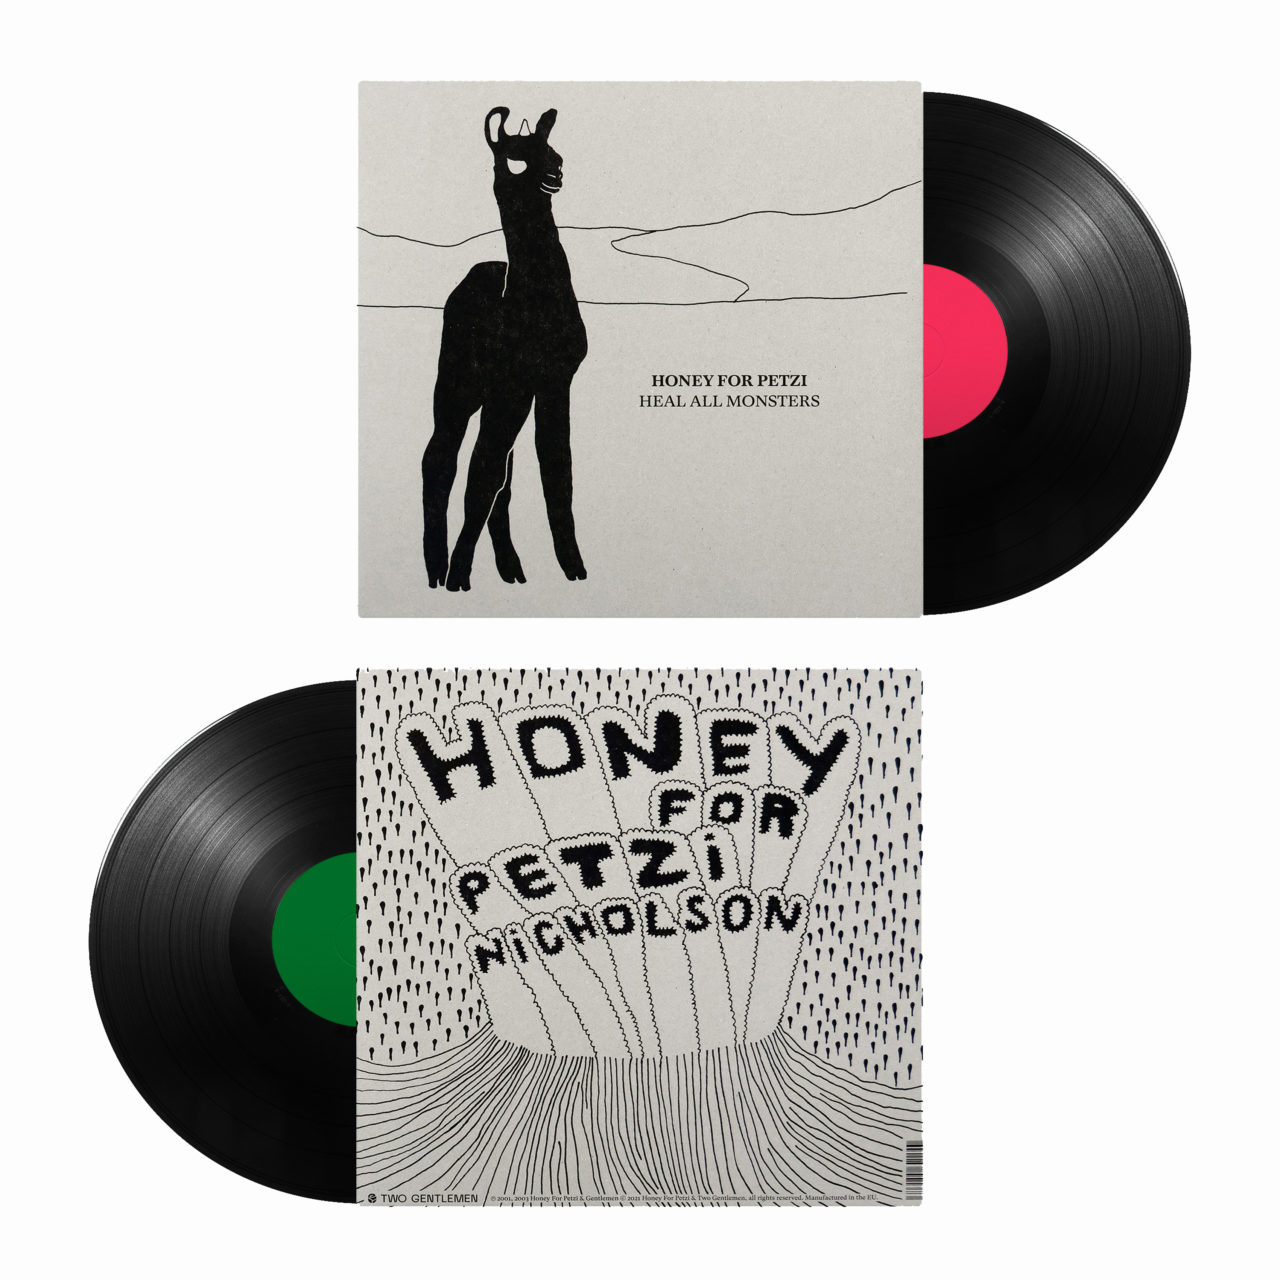 HONEY FOR PETZI - Heal All Monsters & Nicholson Vinyl Reissue